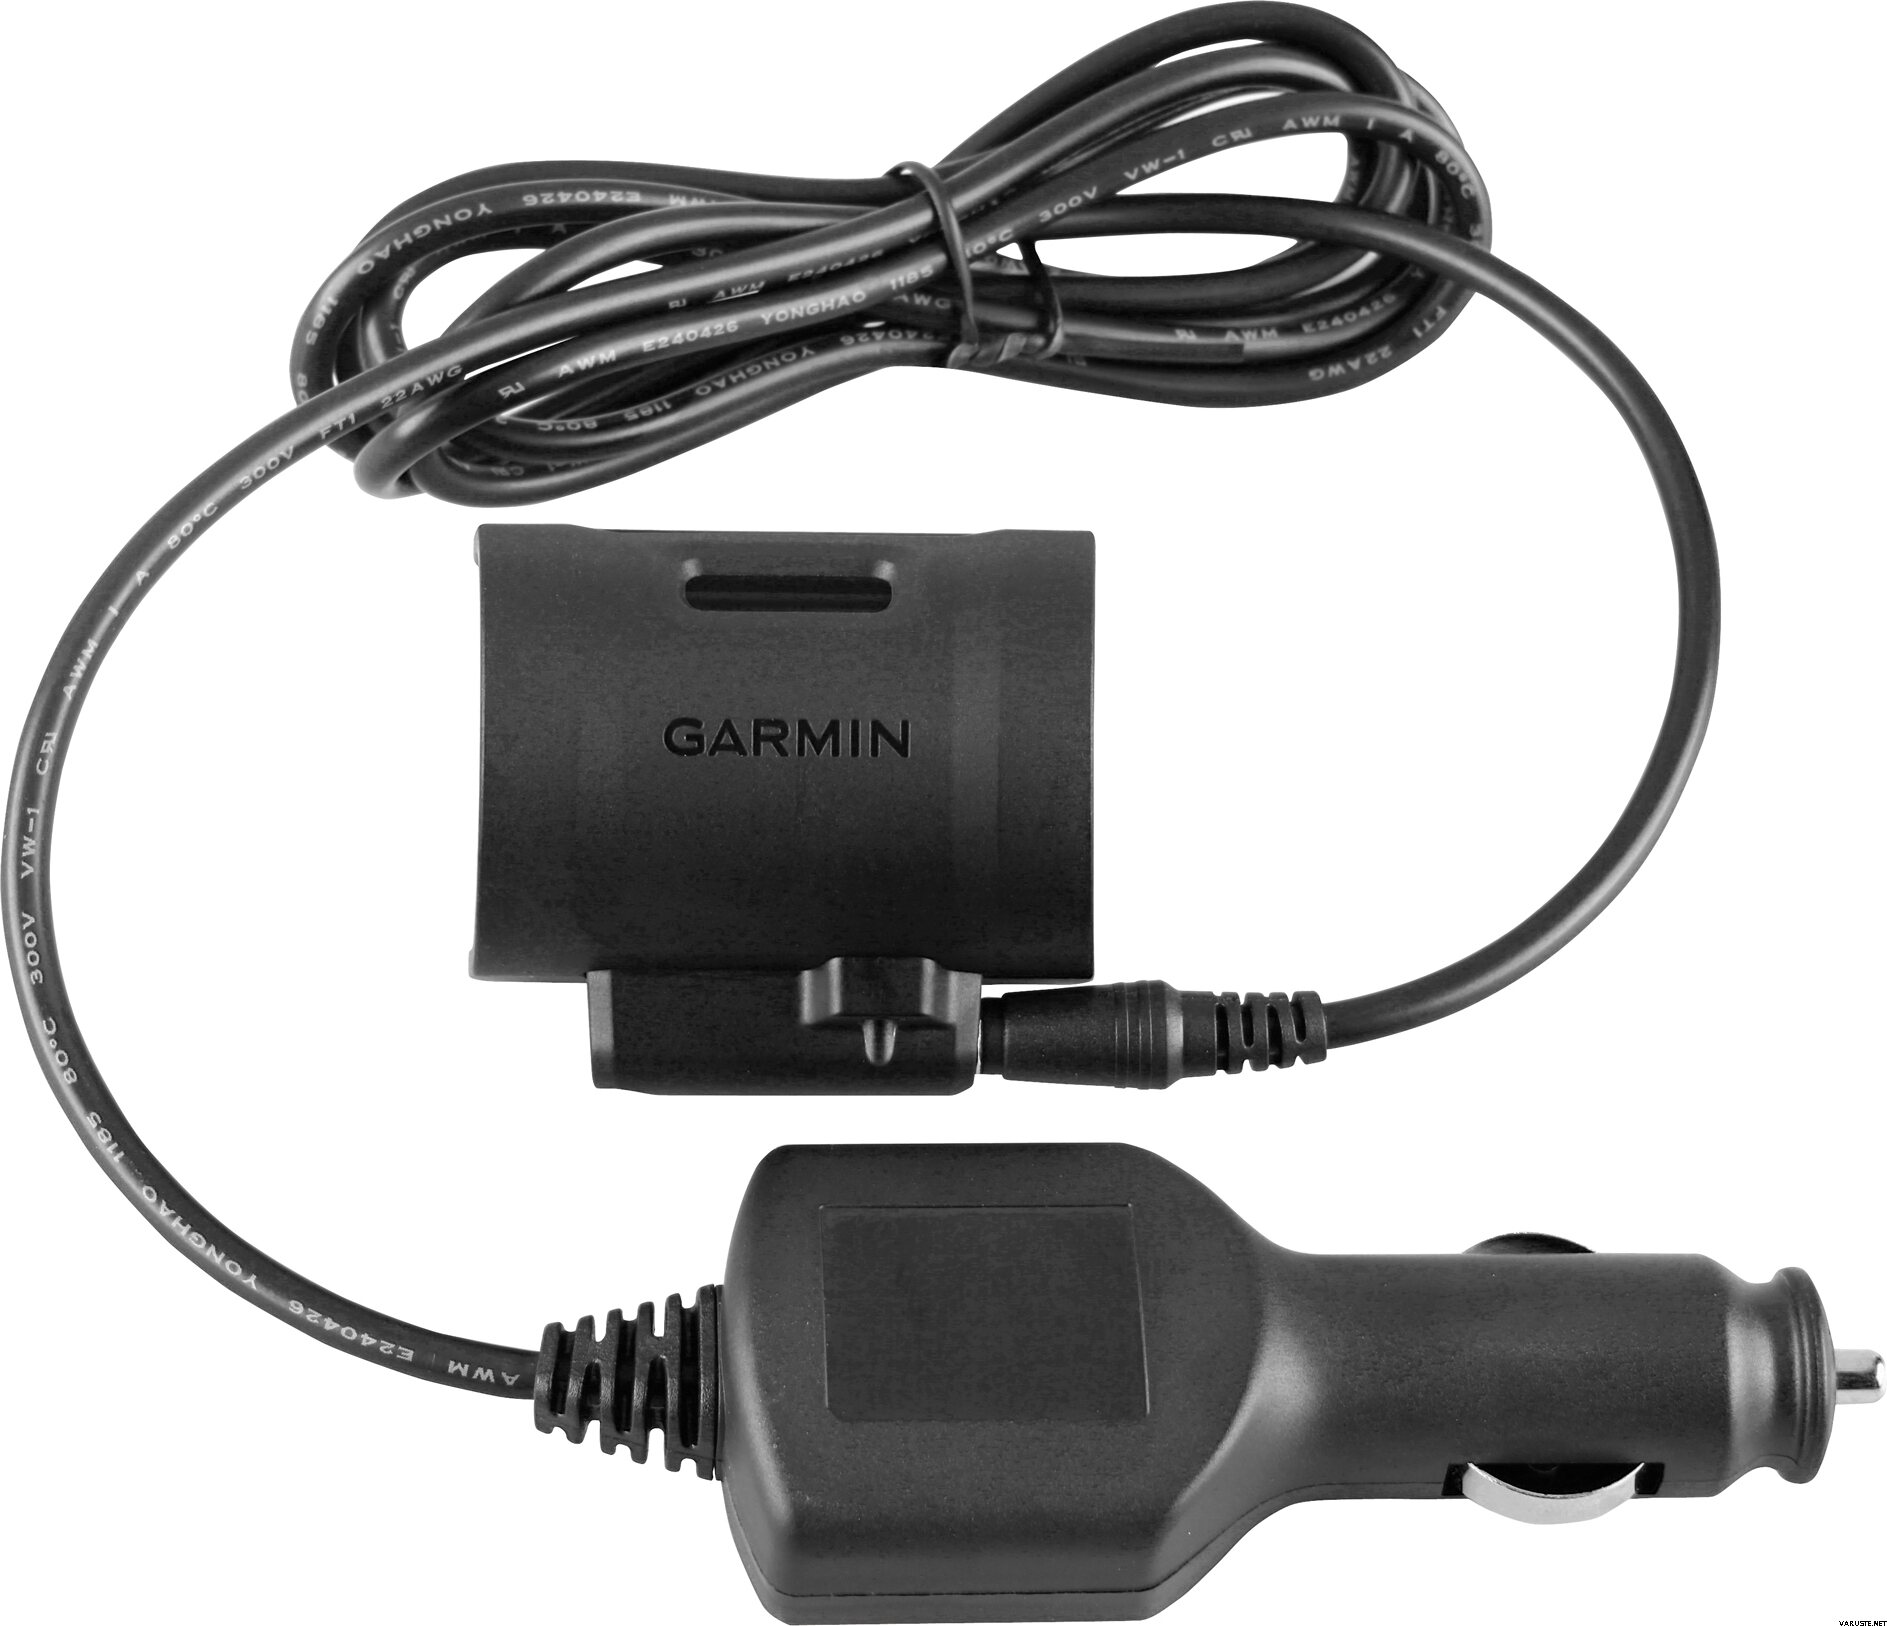 Caricabatterie Garmin 12V per auto attacco mini-USB